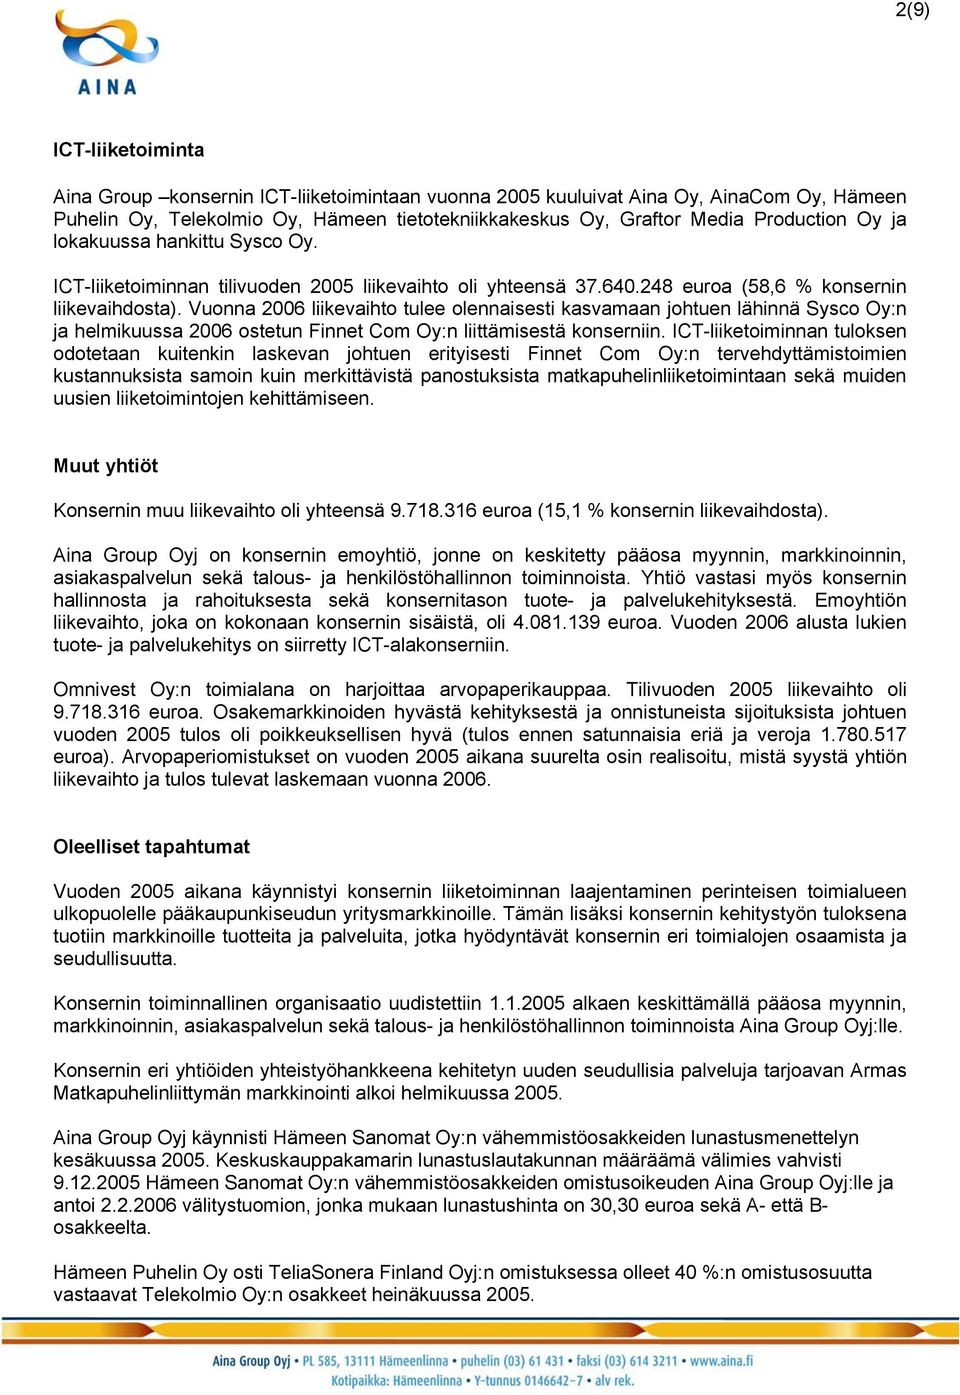 Vuonna 2006 liikevaihto tulee olennaisesti kasvamaan johtuen lähinnä Sysco Oy:n ja helmikuussa 2006 ostetun Finnet Com Oy:n liittämisestä konserniin.